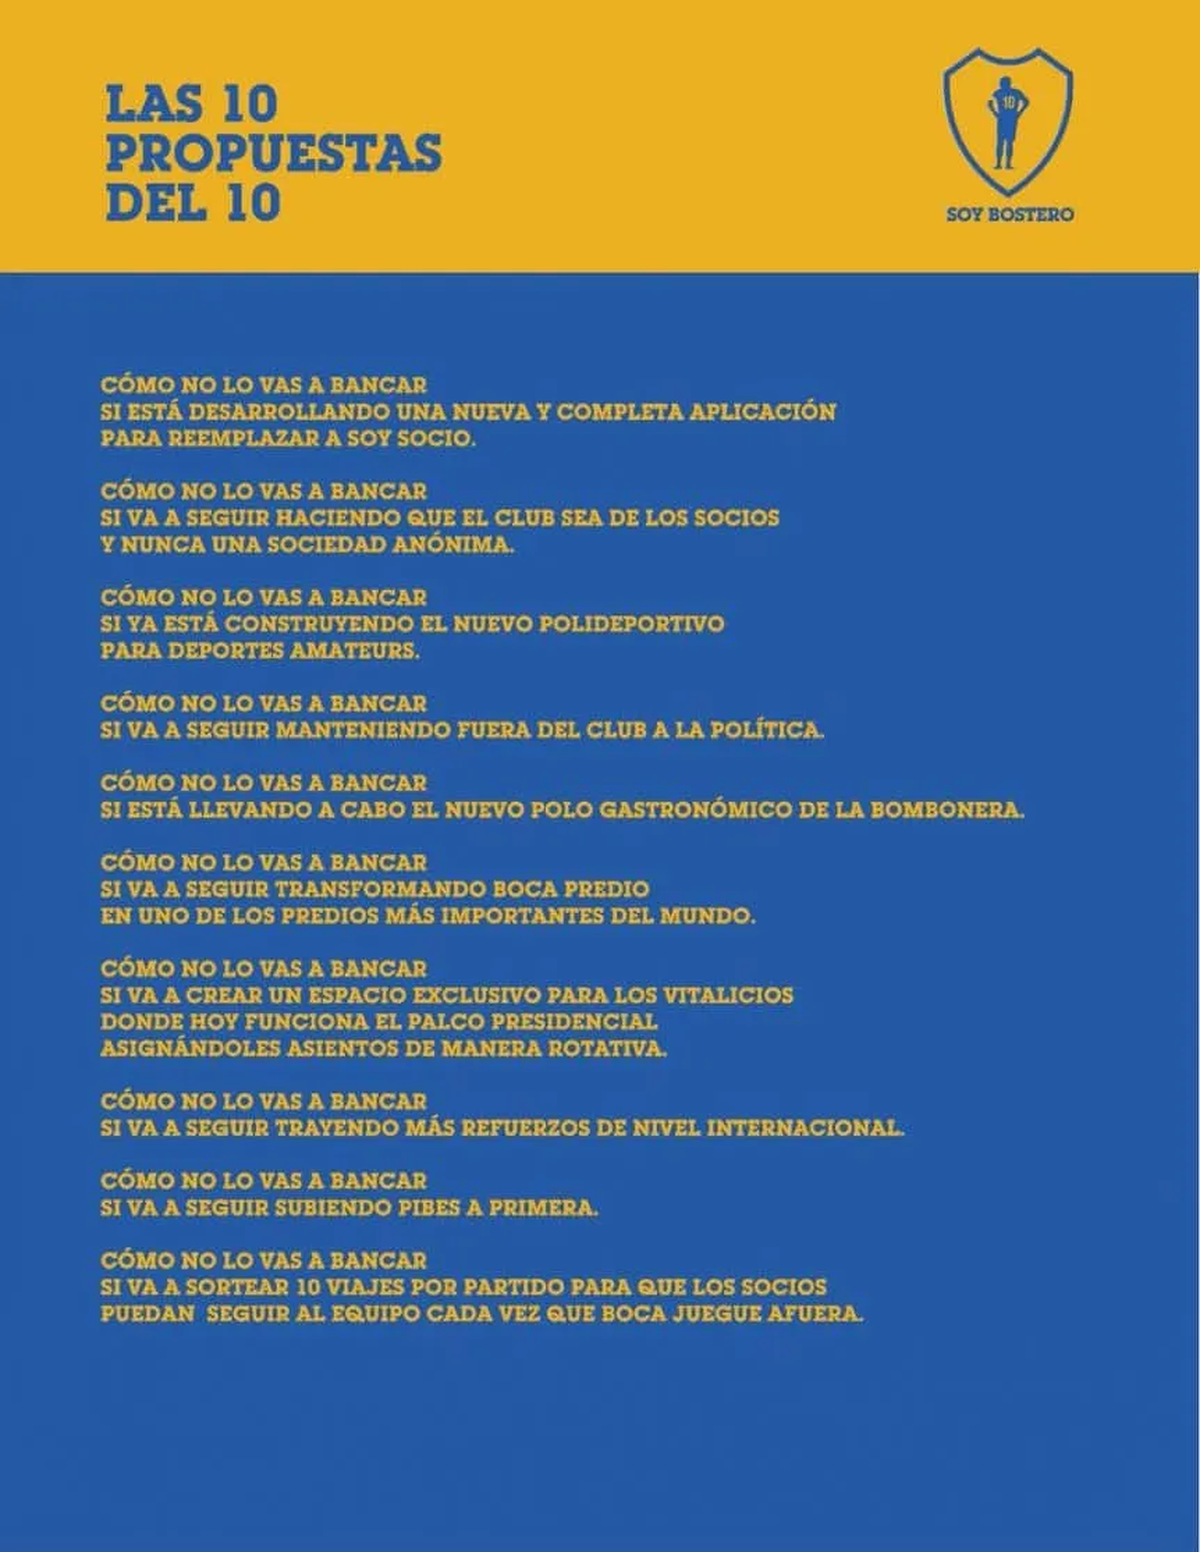 Las 10 propuestas de Riquelme si llega a ganar las elecciones en Boca